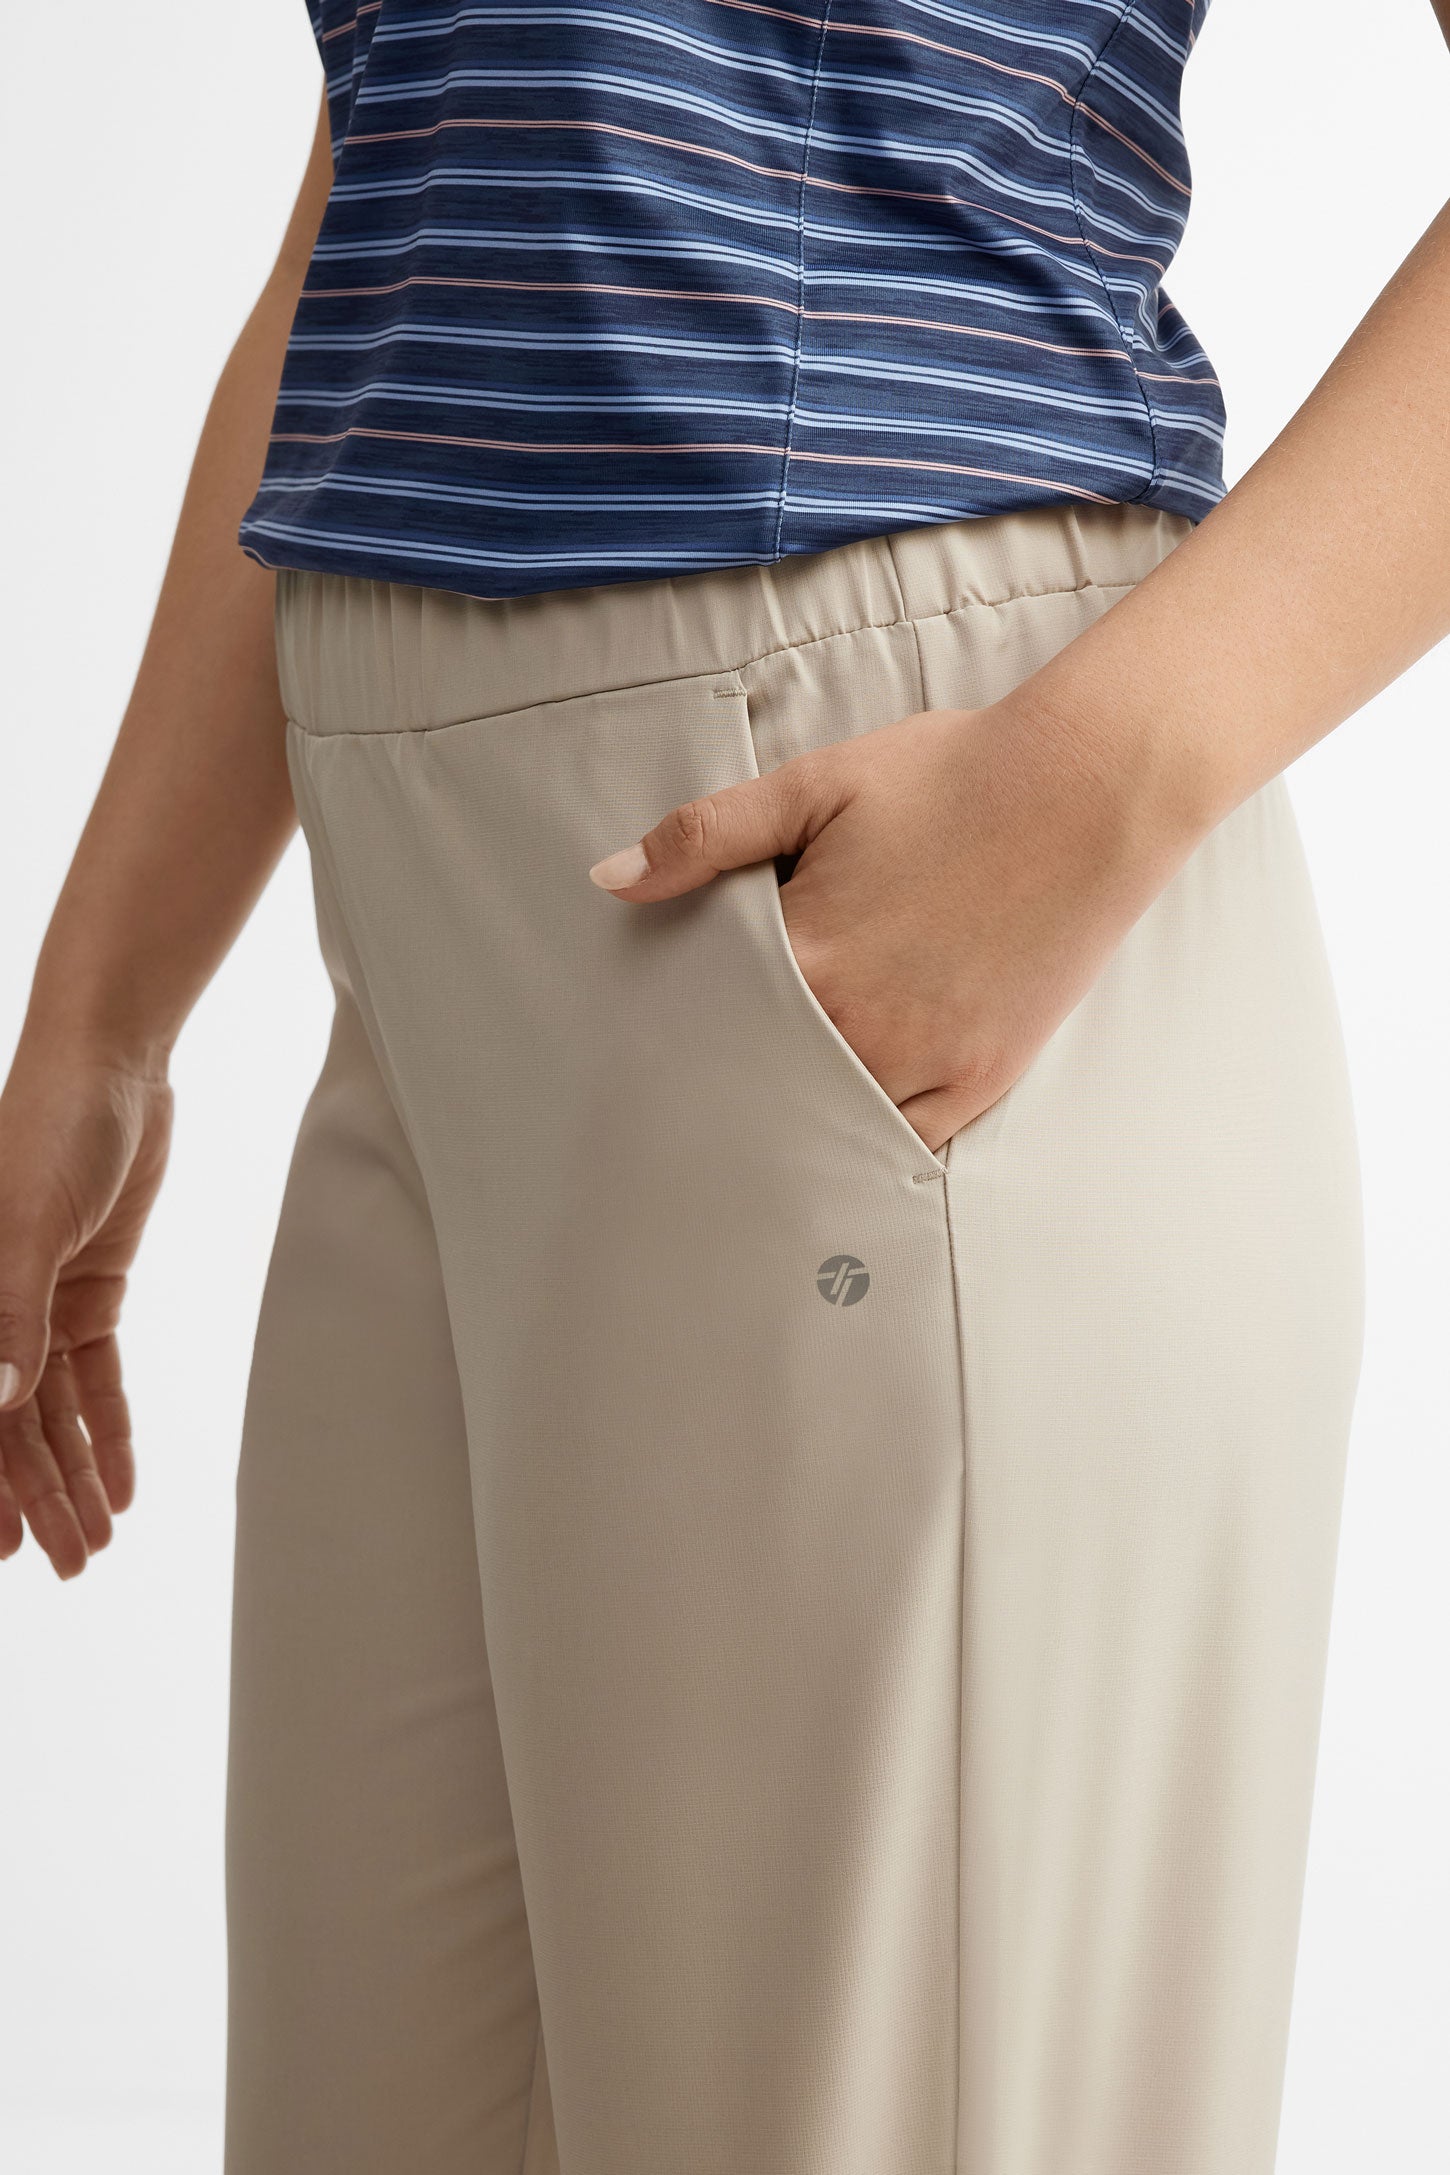 Pantalon athlétique taille élastique - Femme && BEIGE